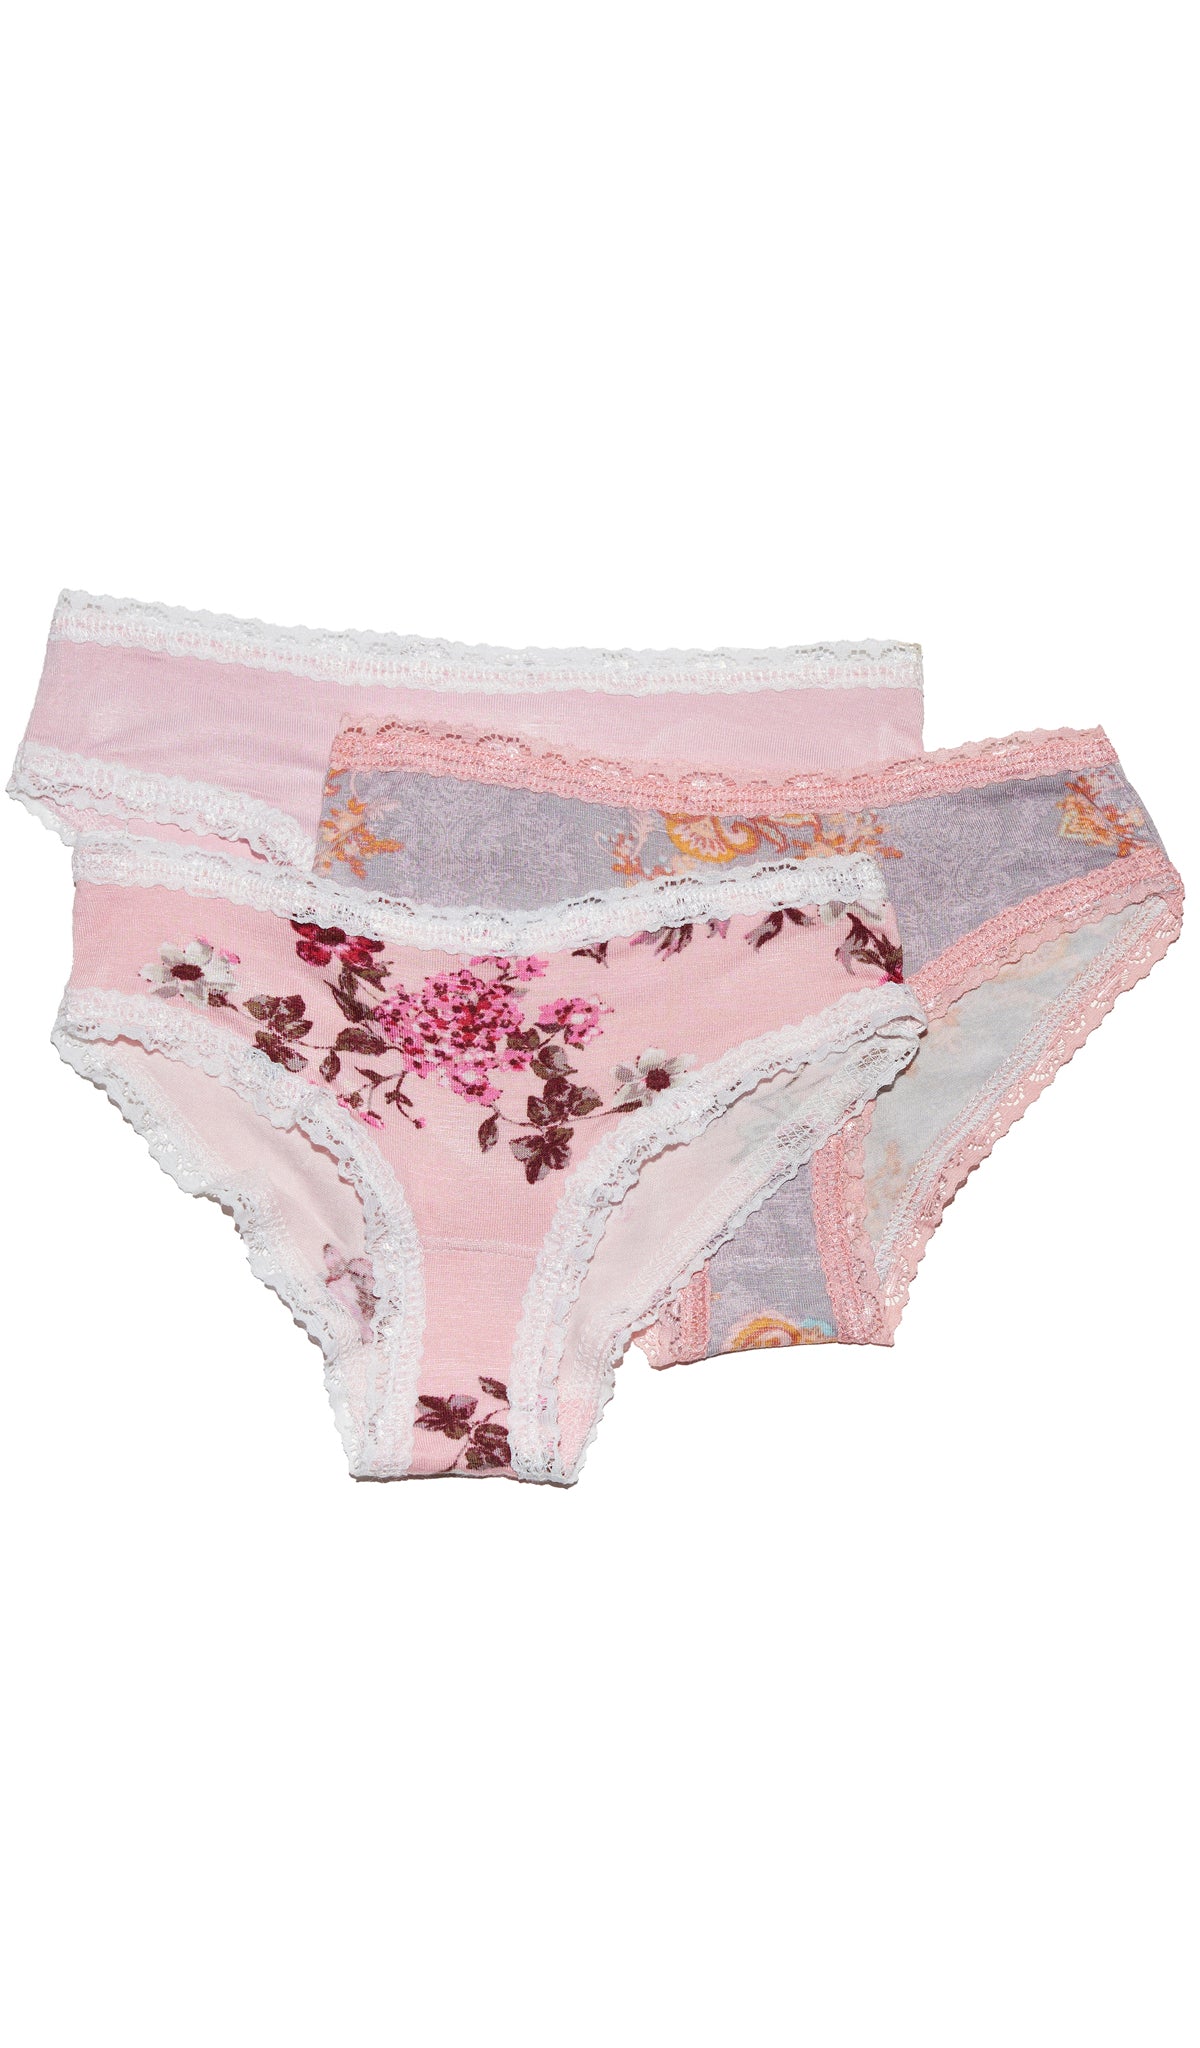 Toddler Girls Underwear, 3 Pack 